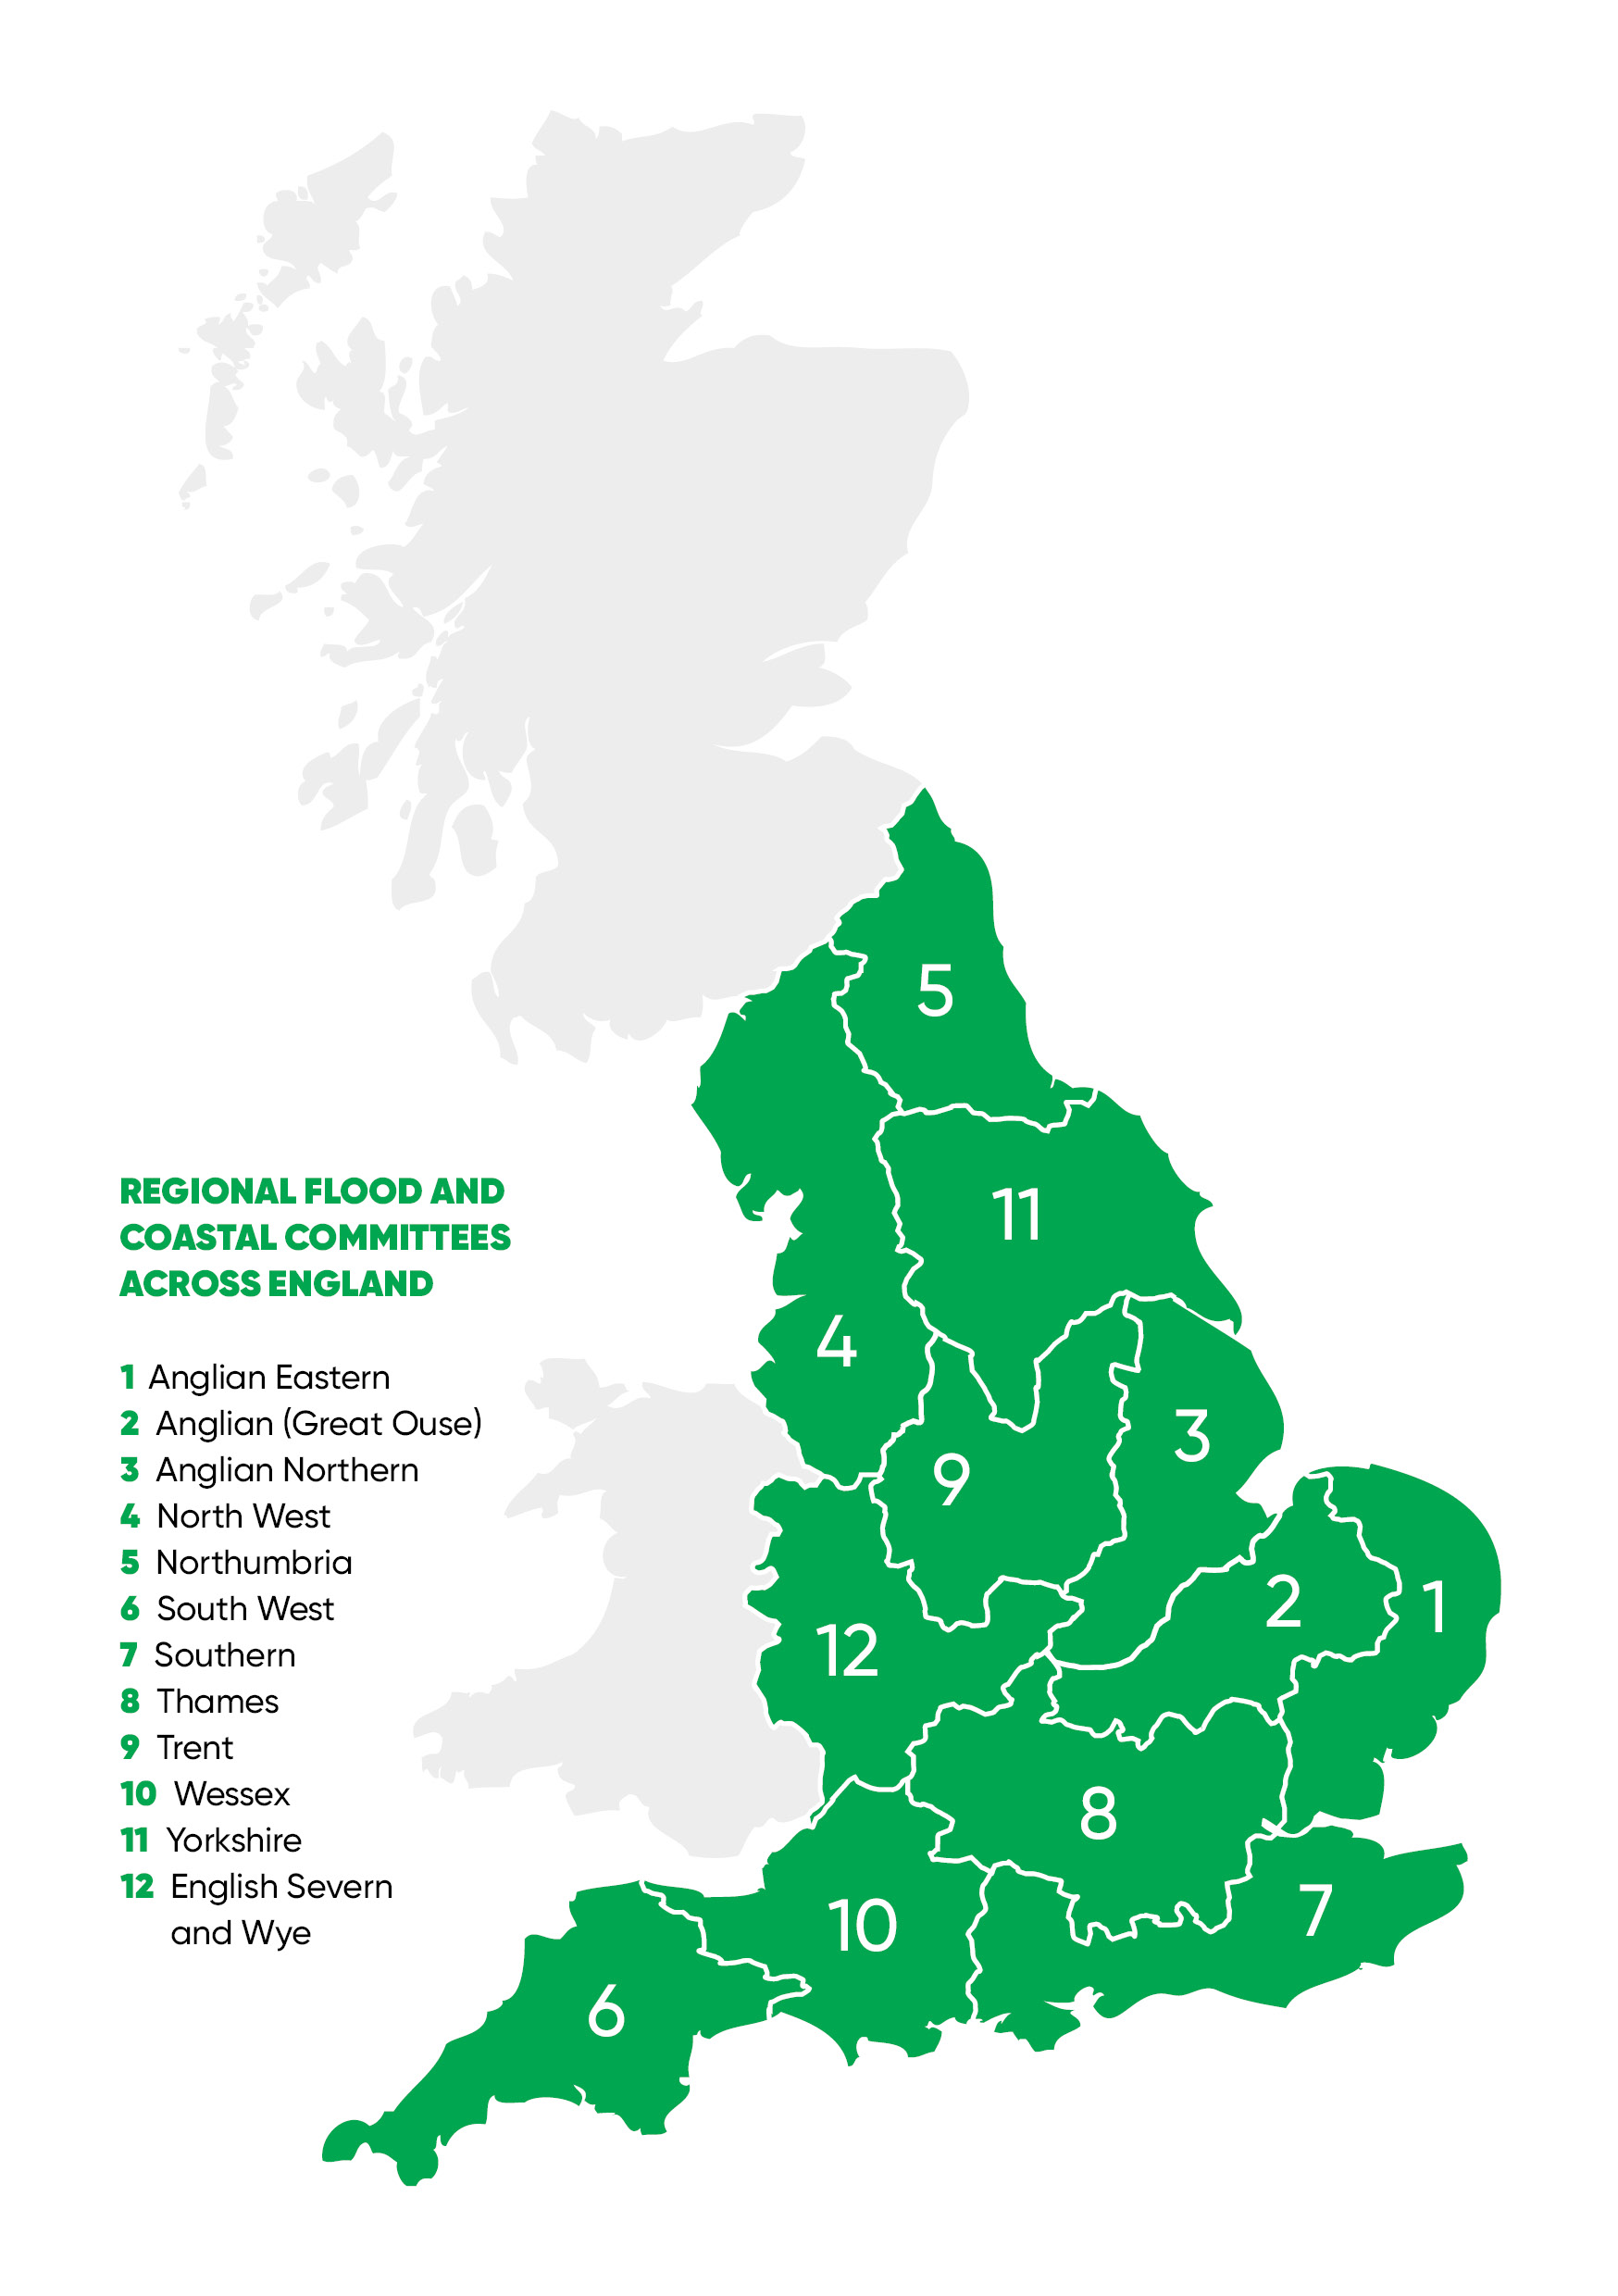 Regional flood and coastal committees across England